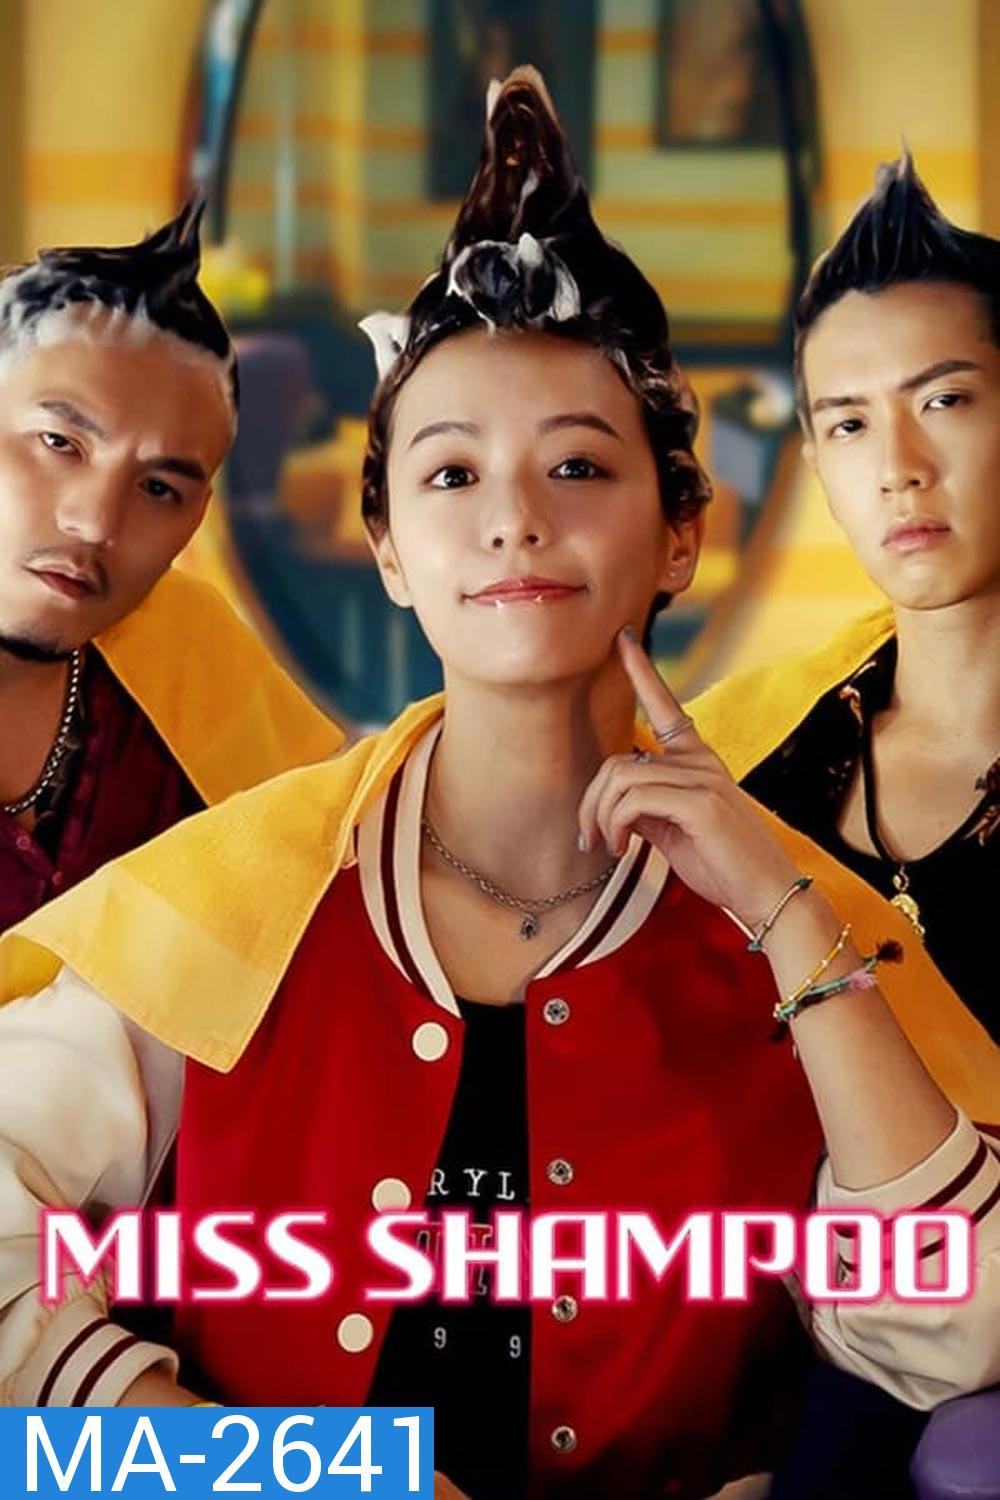 Miss Shampoo (2023) สูตรรักผสมแชมพู